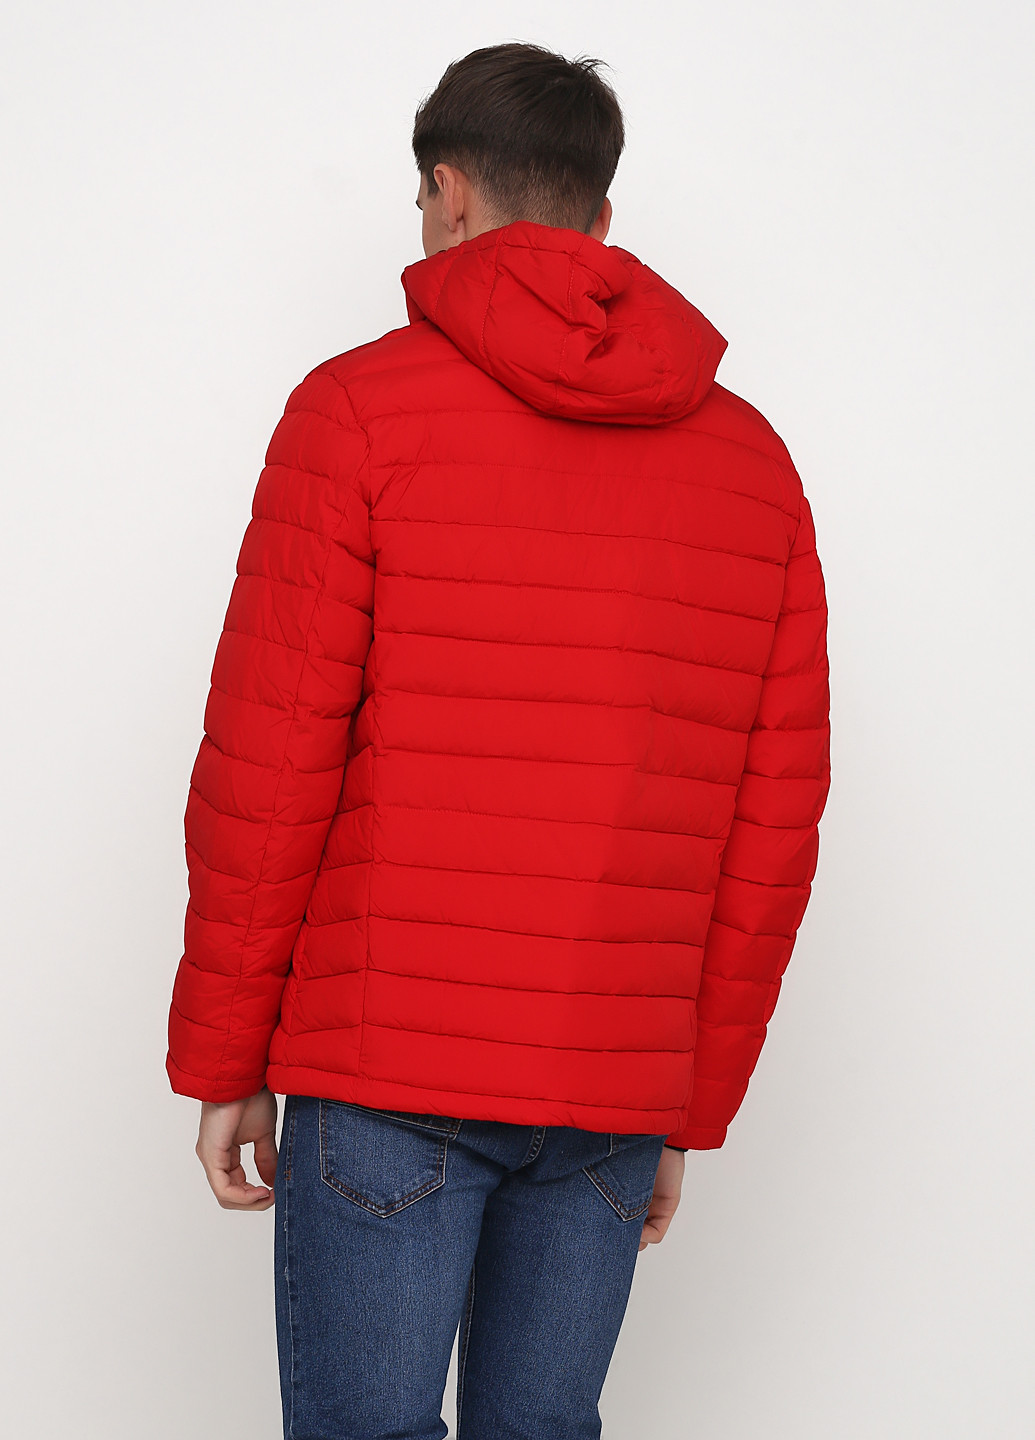 Красная демисезонная куртка Manikana